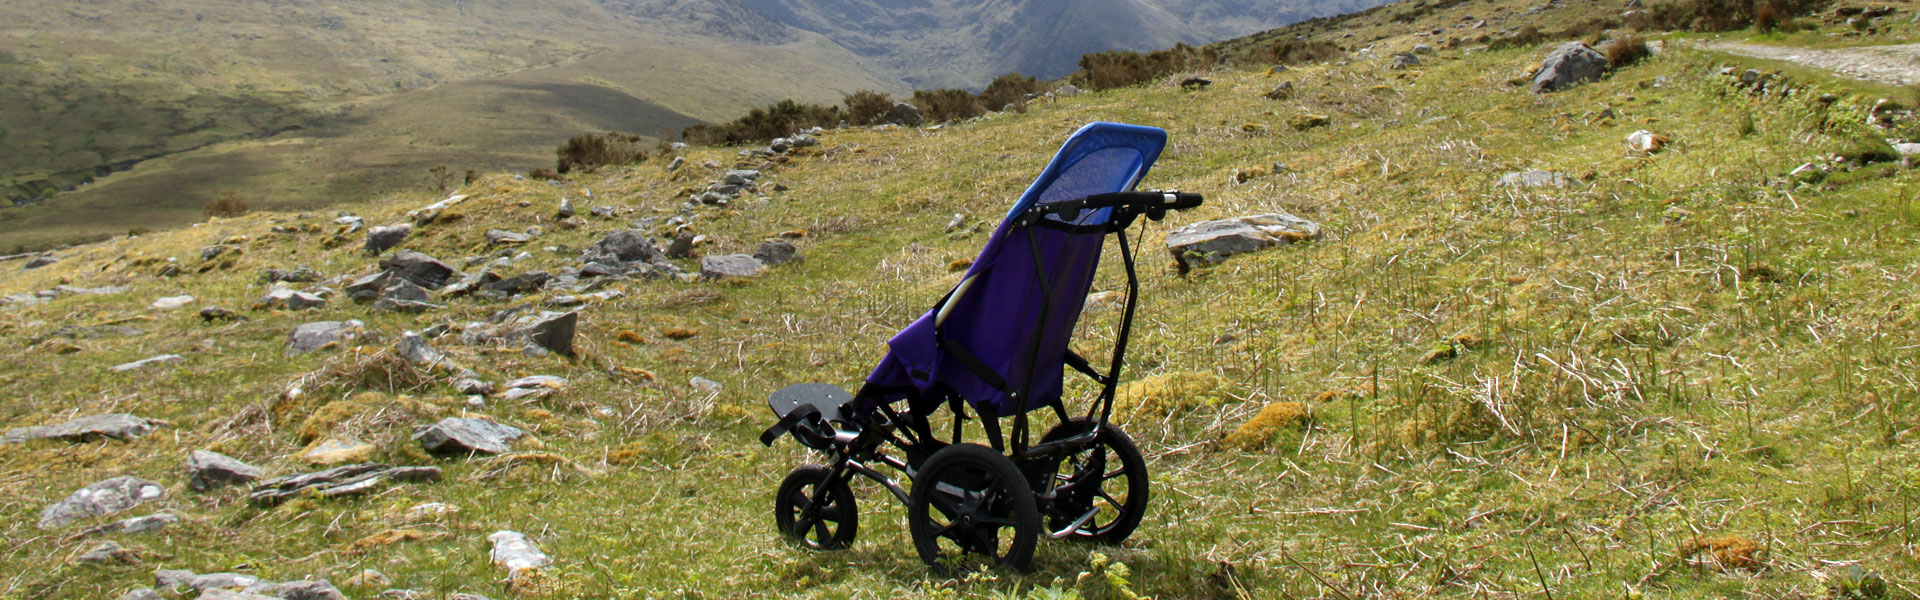 special needs running stroller